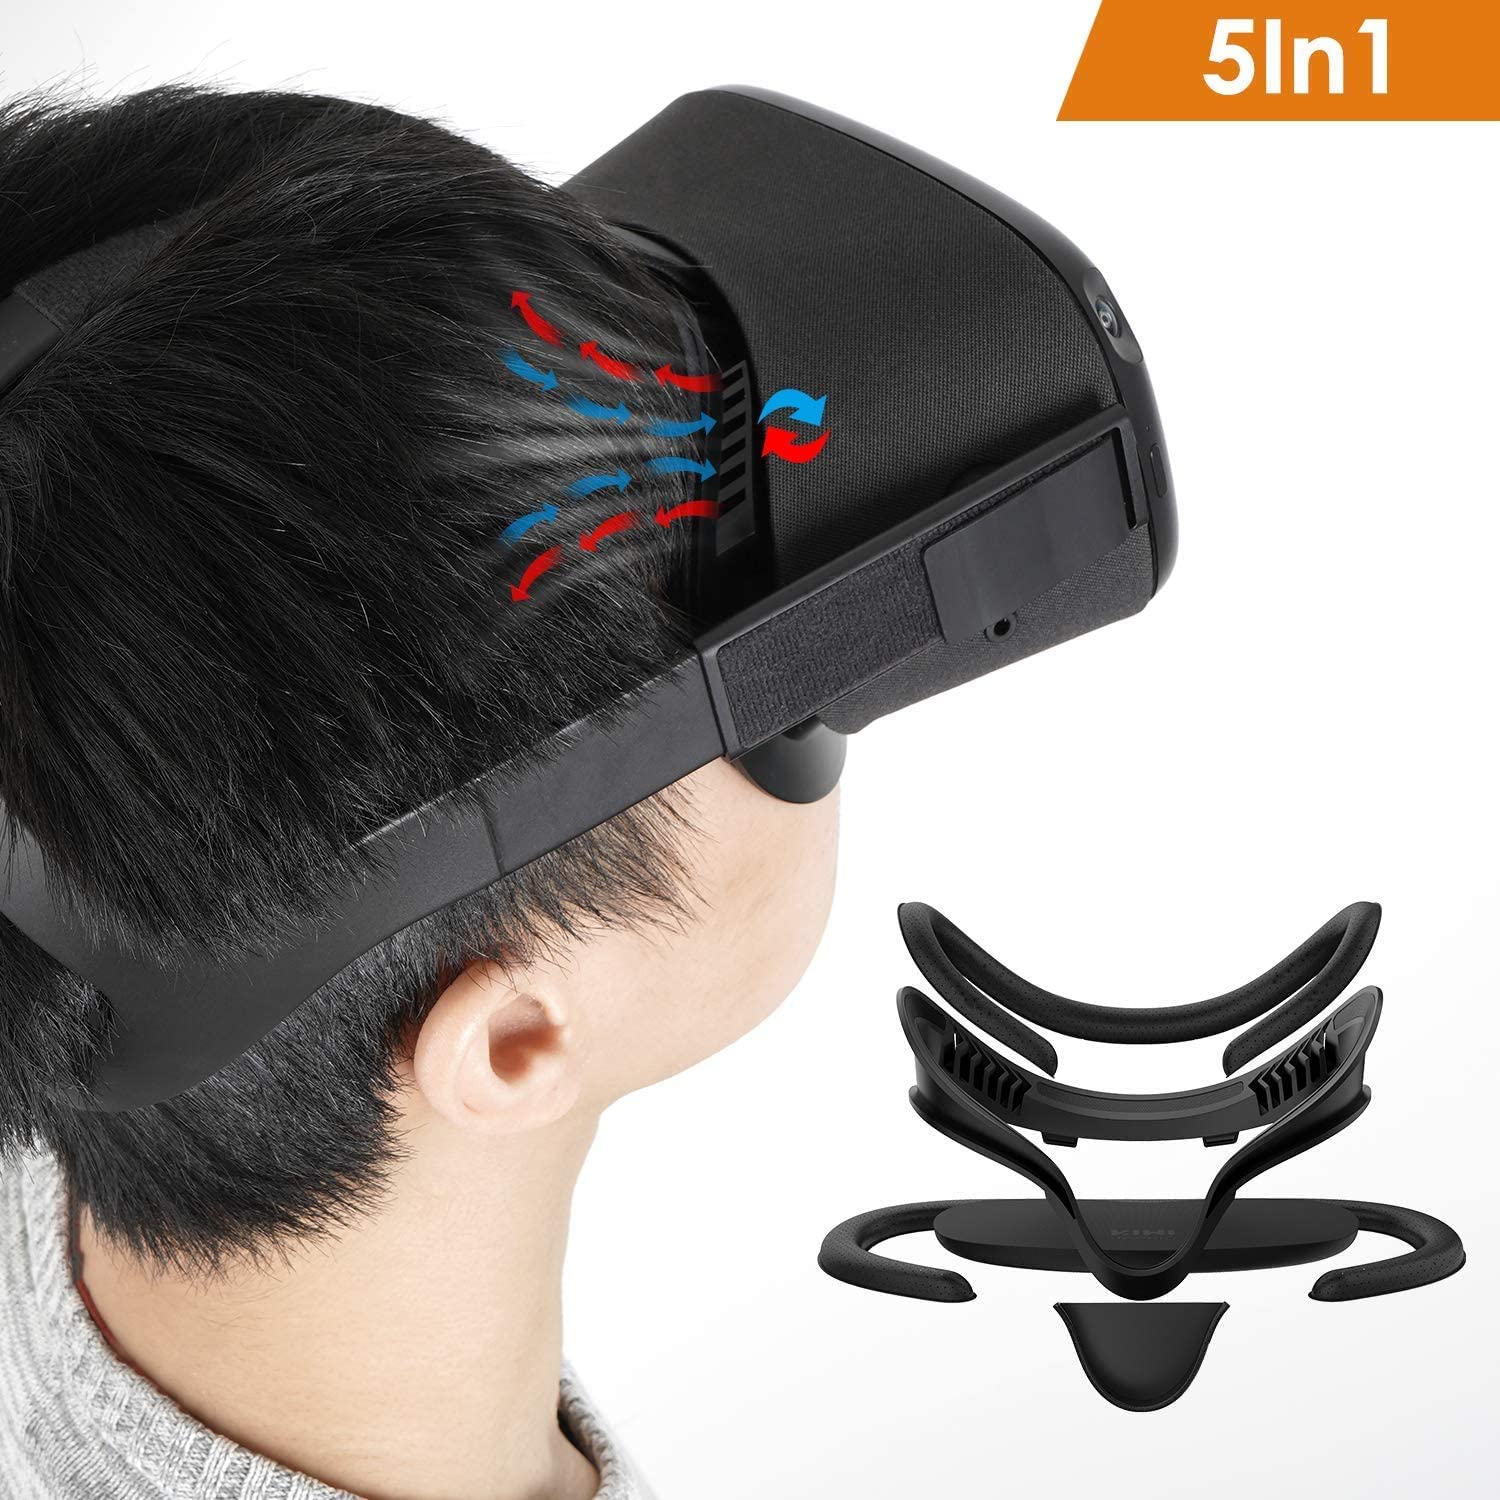 Masque facial Oculus Quest 1 amélioré avec ventilation | Nivrana